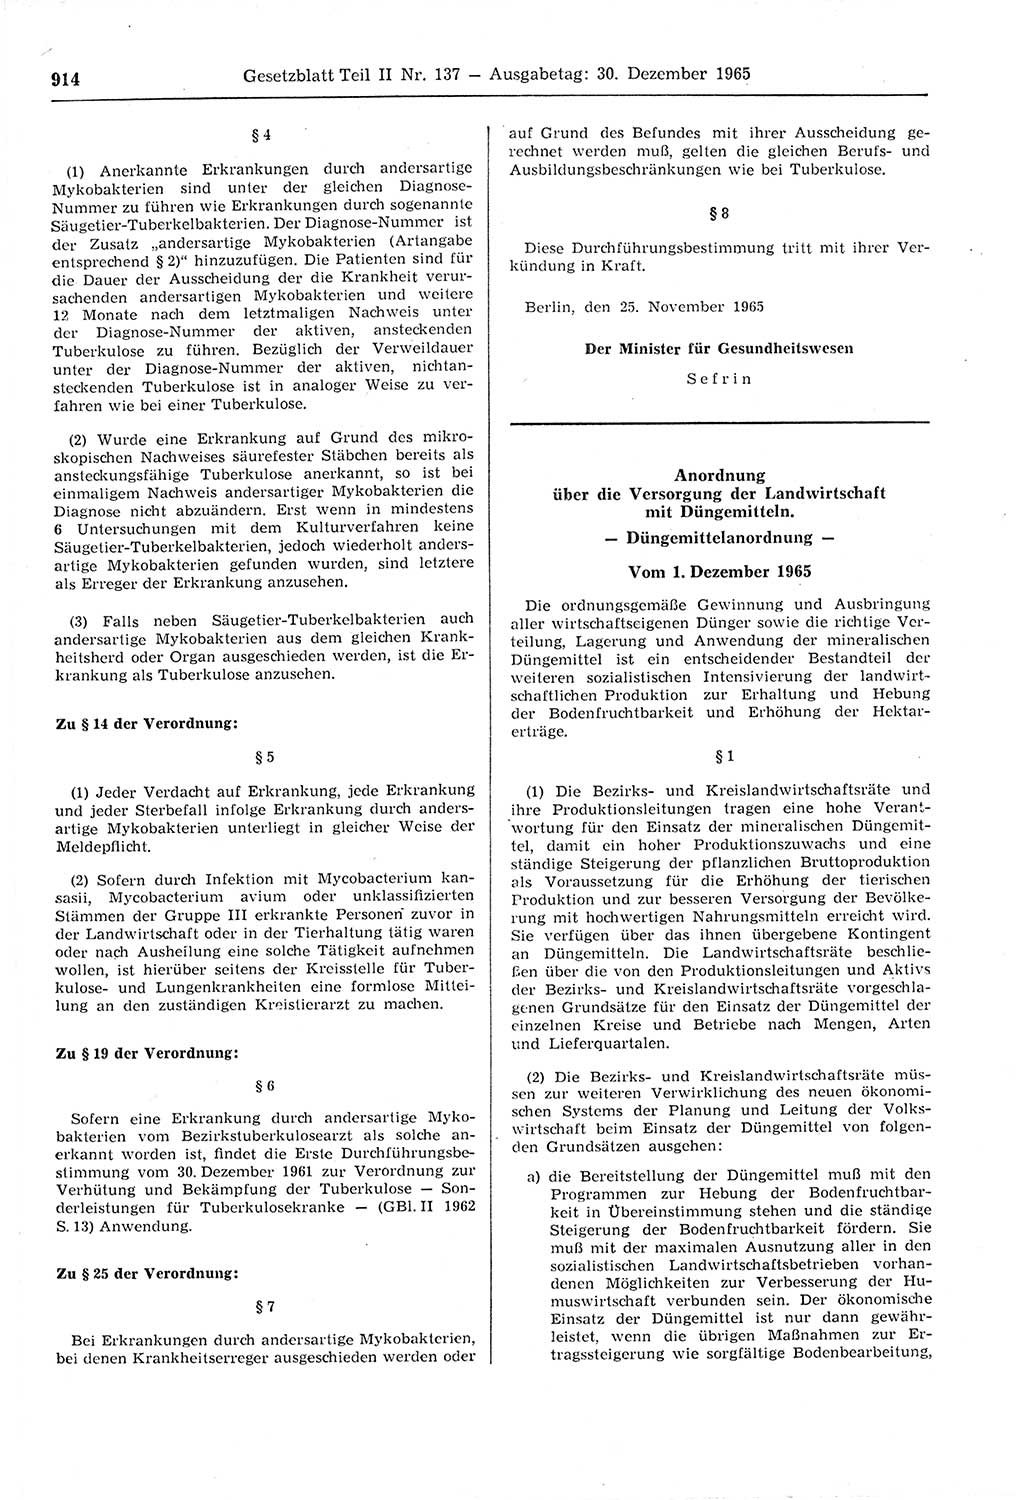 Gesetzblatt (GBl.) der Deutschen Demokratischen Republik (DDR) Teil ⅠⅠ 1965, Seite 914 (GBl. DDR ⅠⅠ 1965, S. 914)